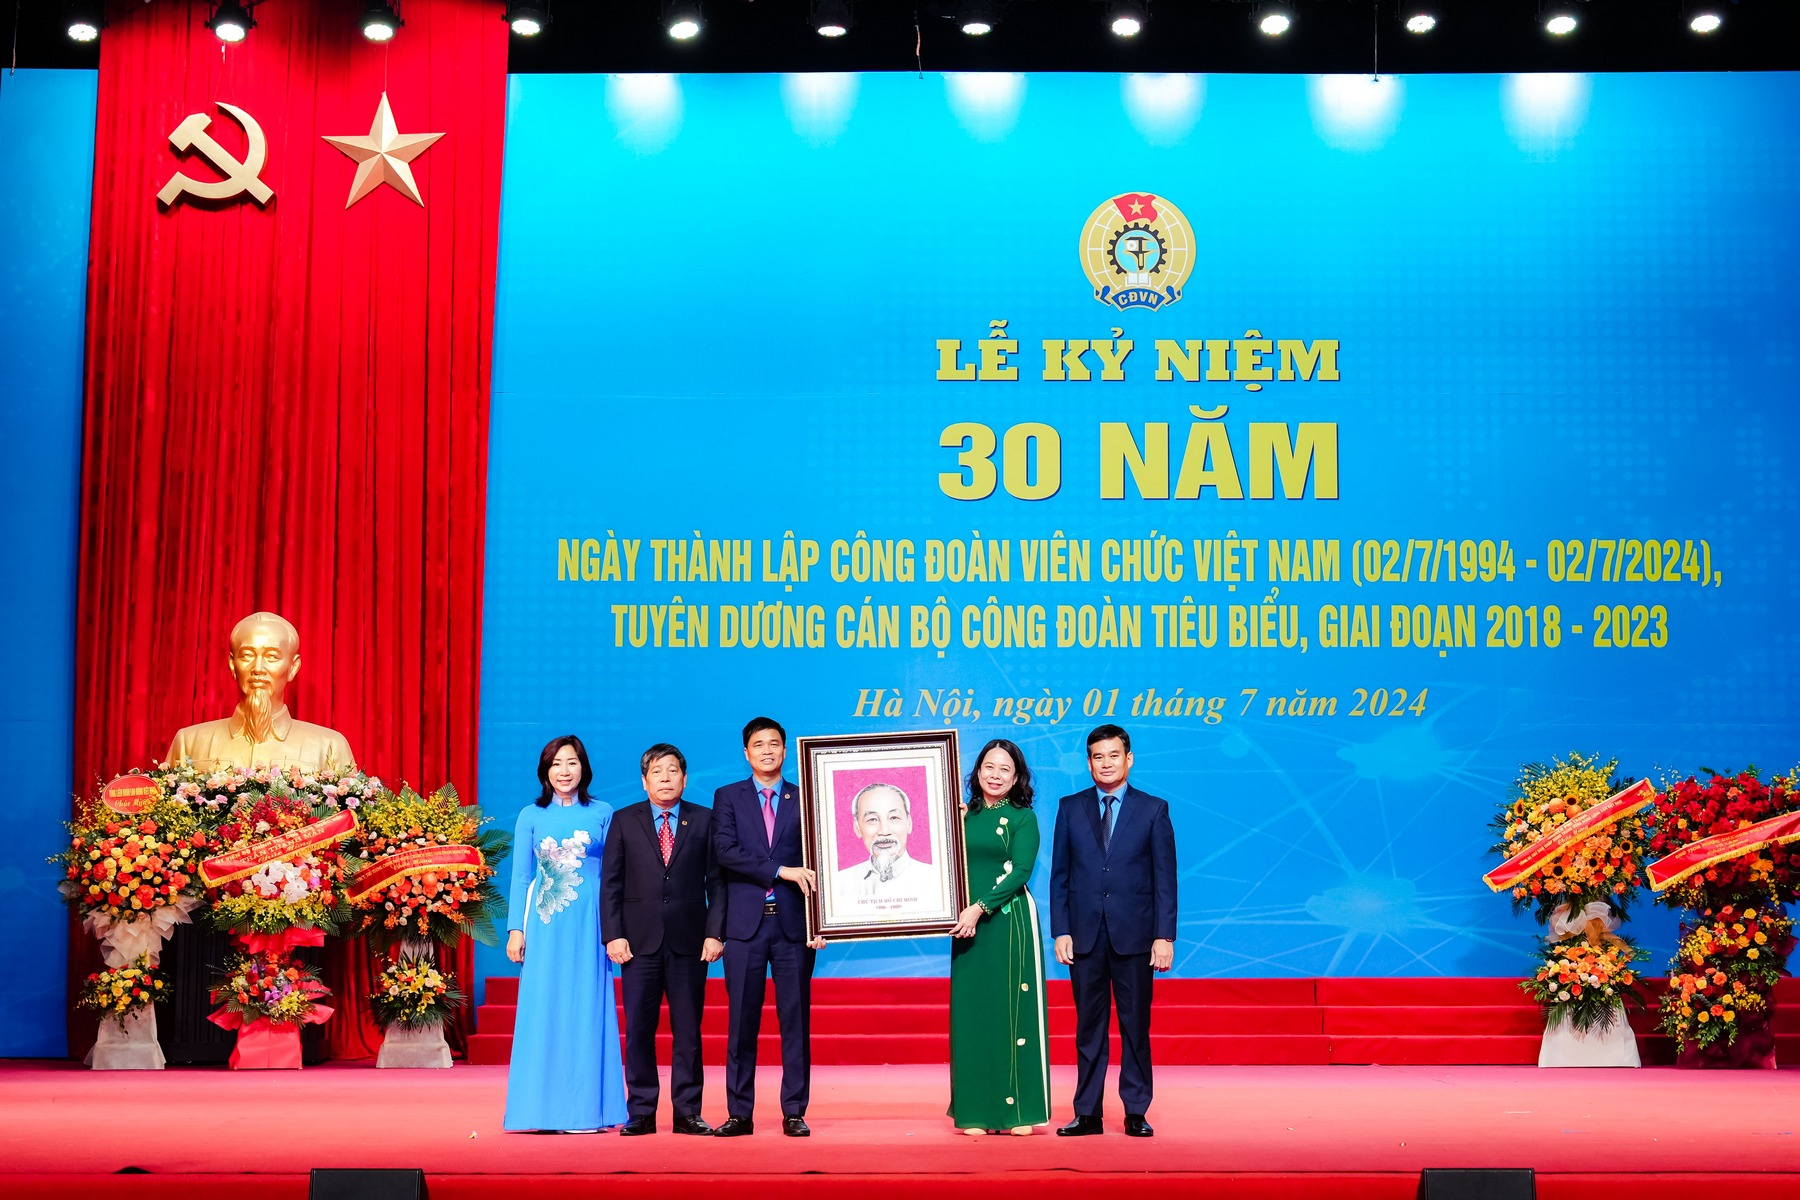 Công đoàn Viên chức Việt Nam - 30 năm đại diện, chăm lo, bảo vệ đoàn viên, người lao động